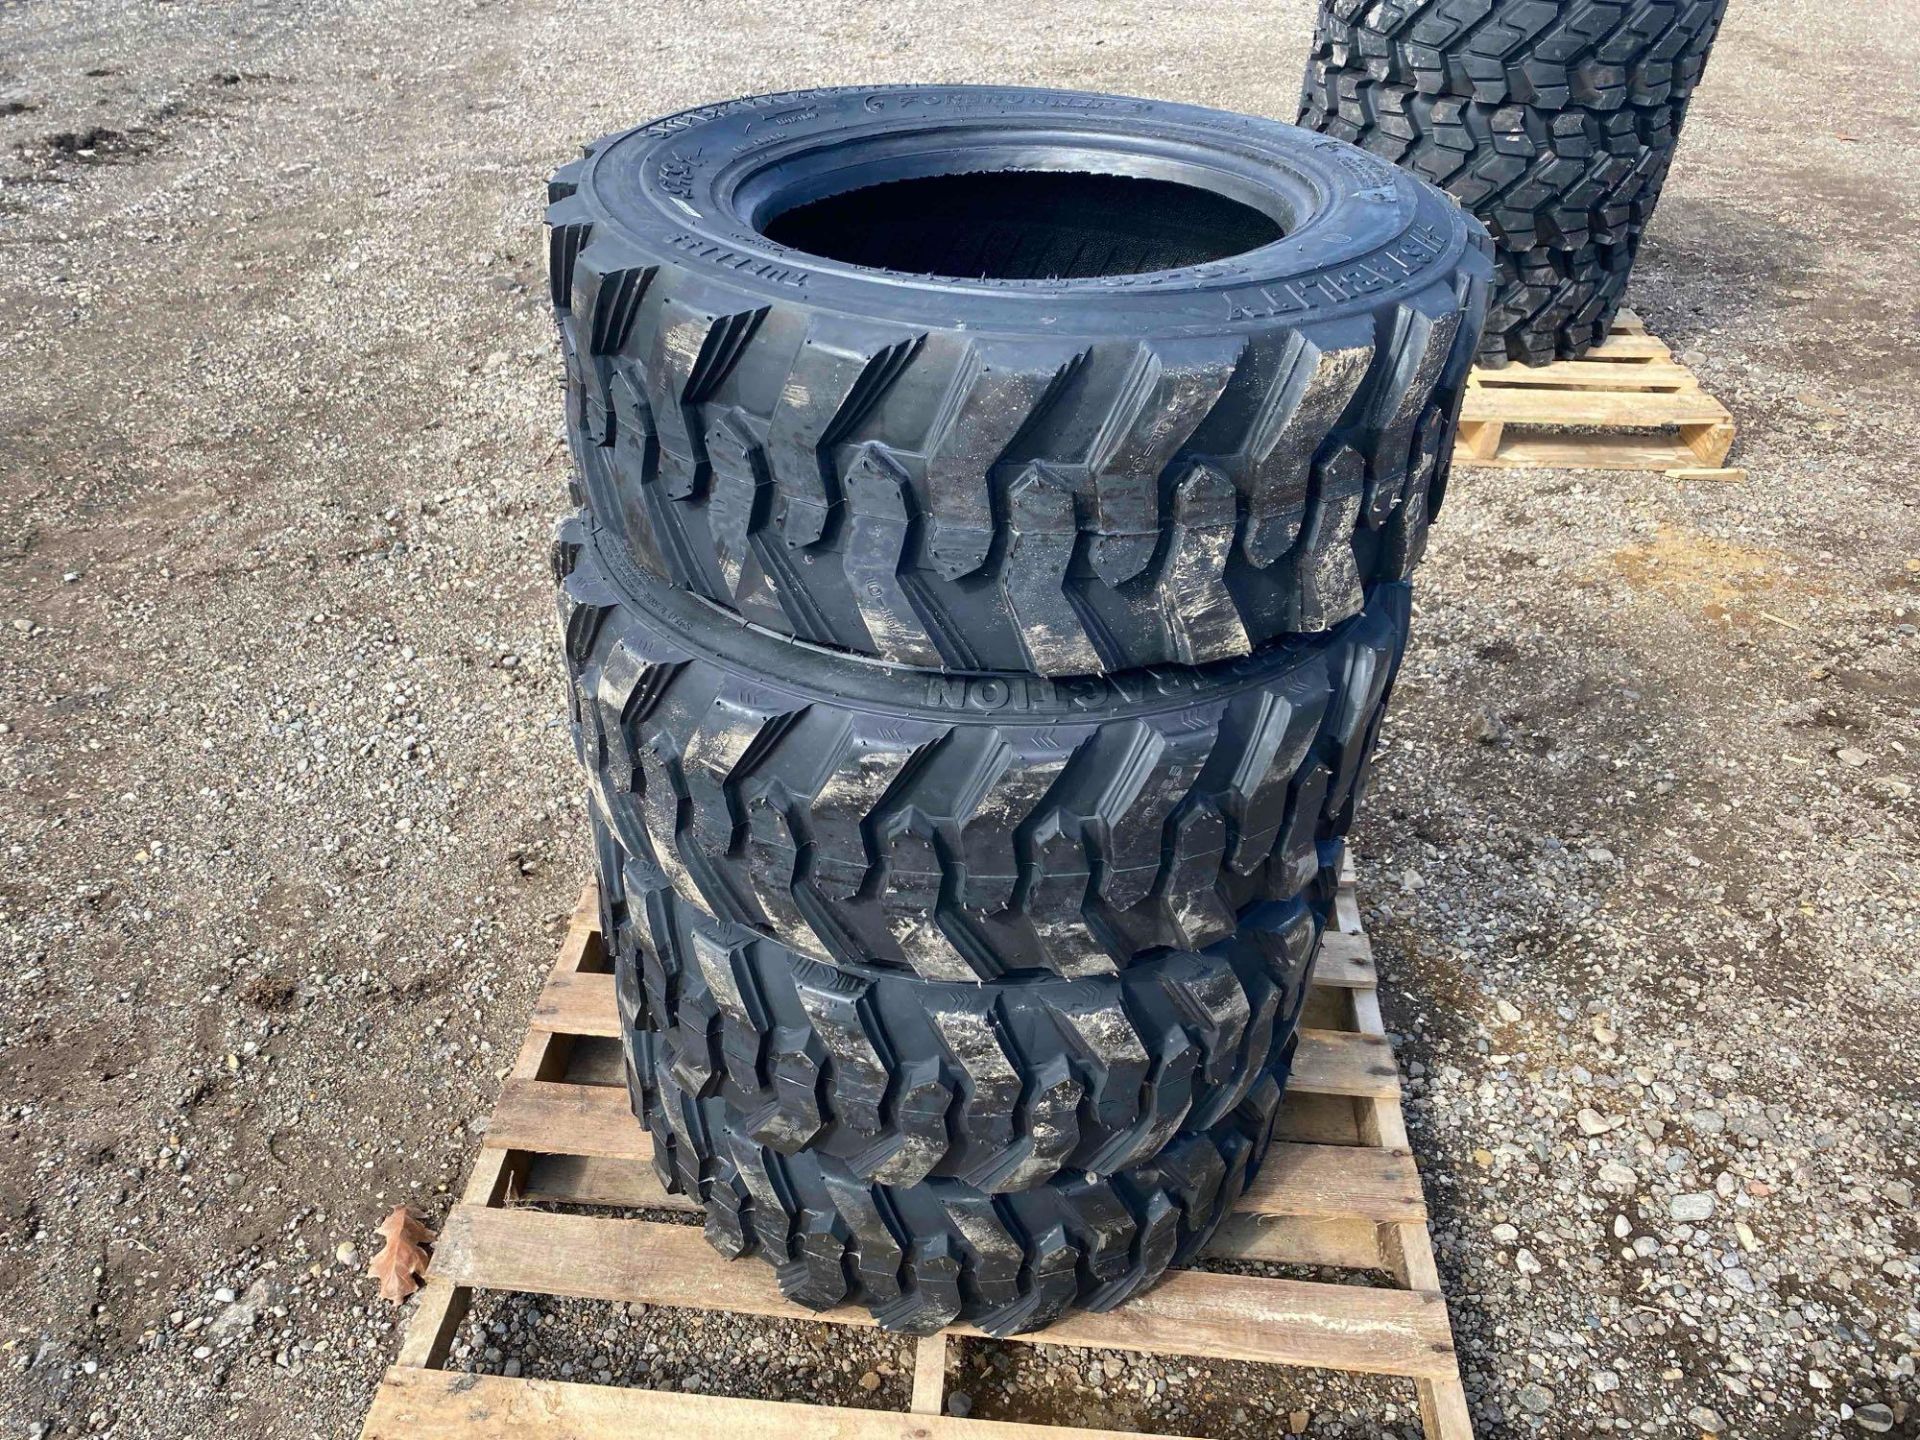 New Skid Loader Tires - Image 2 of 3